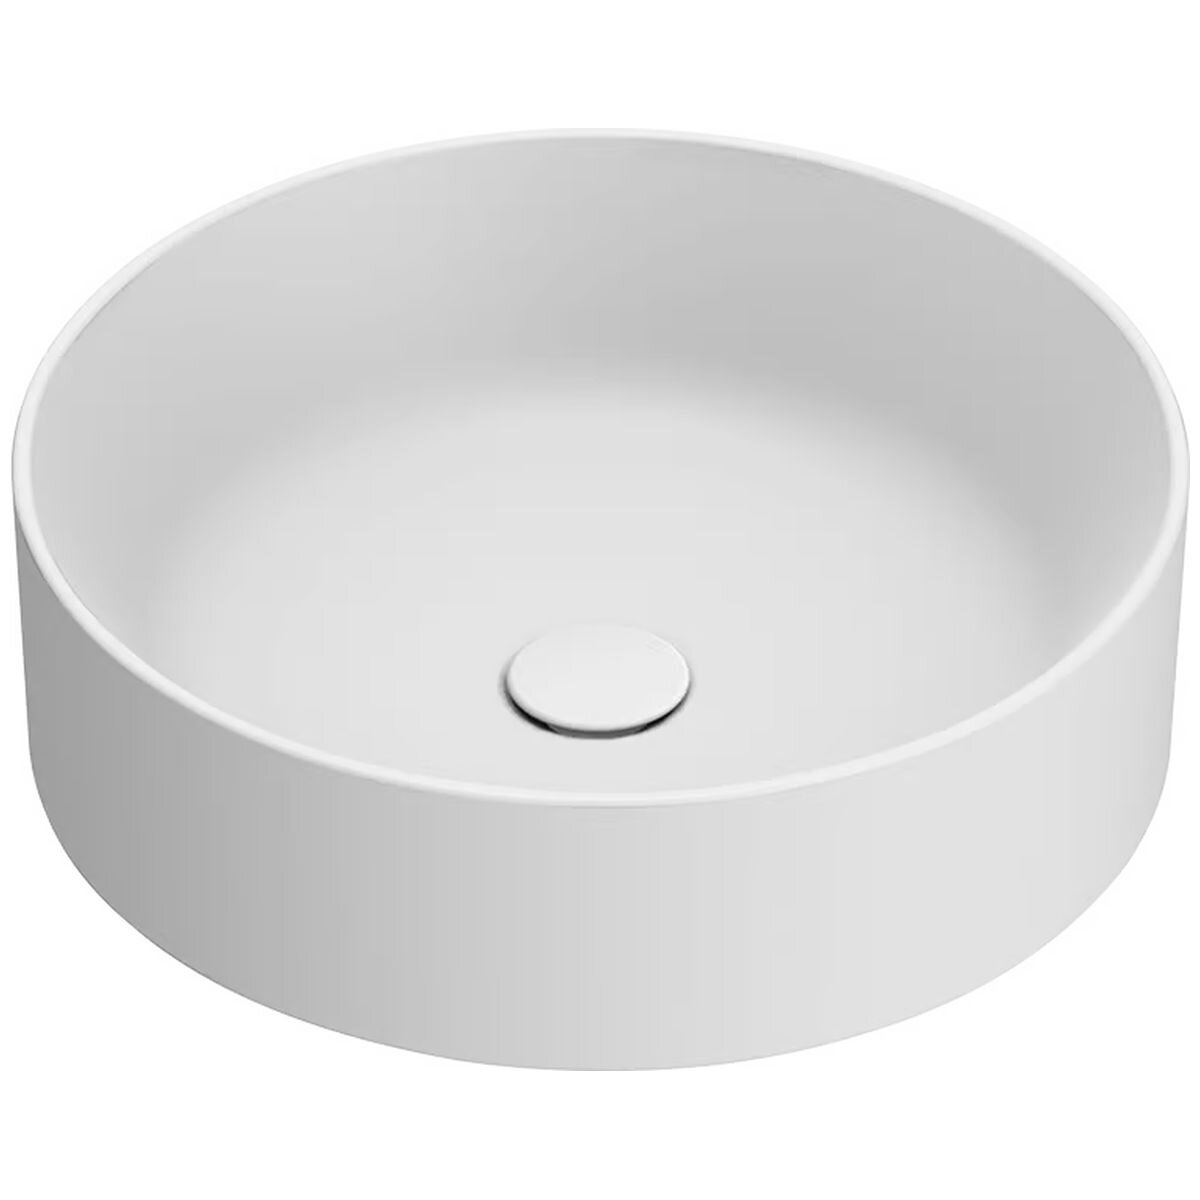 Countertop washbasin - HORIZON 70X35 - CATALANO - ceramic / oval